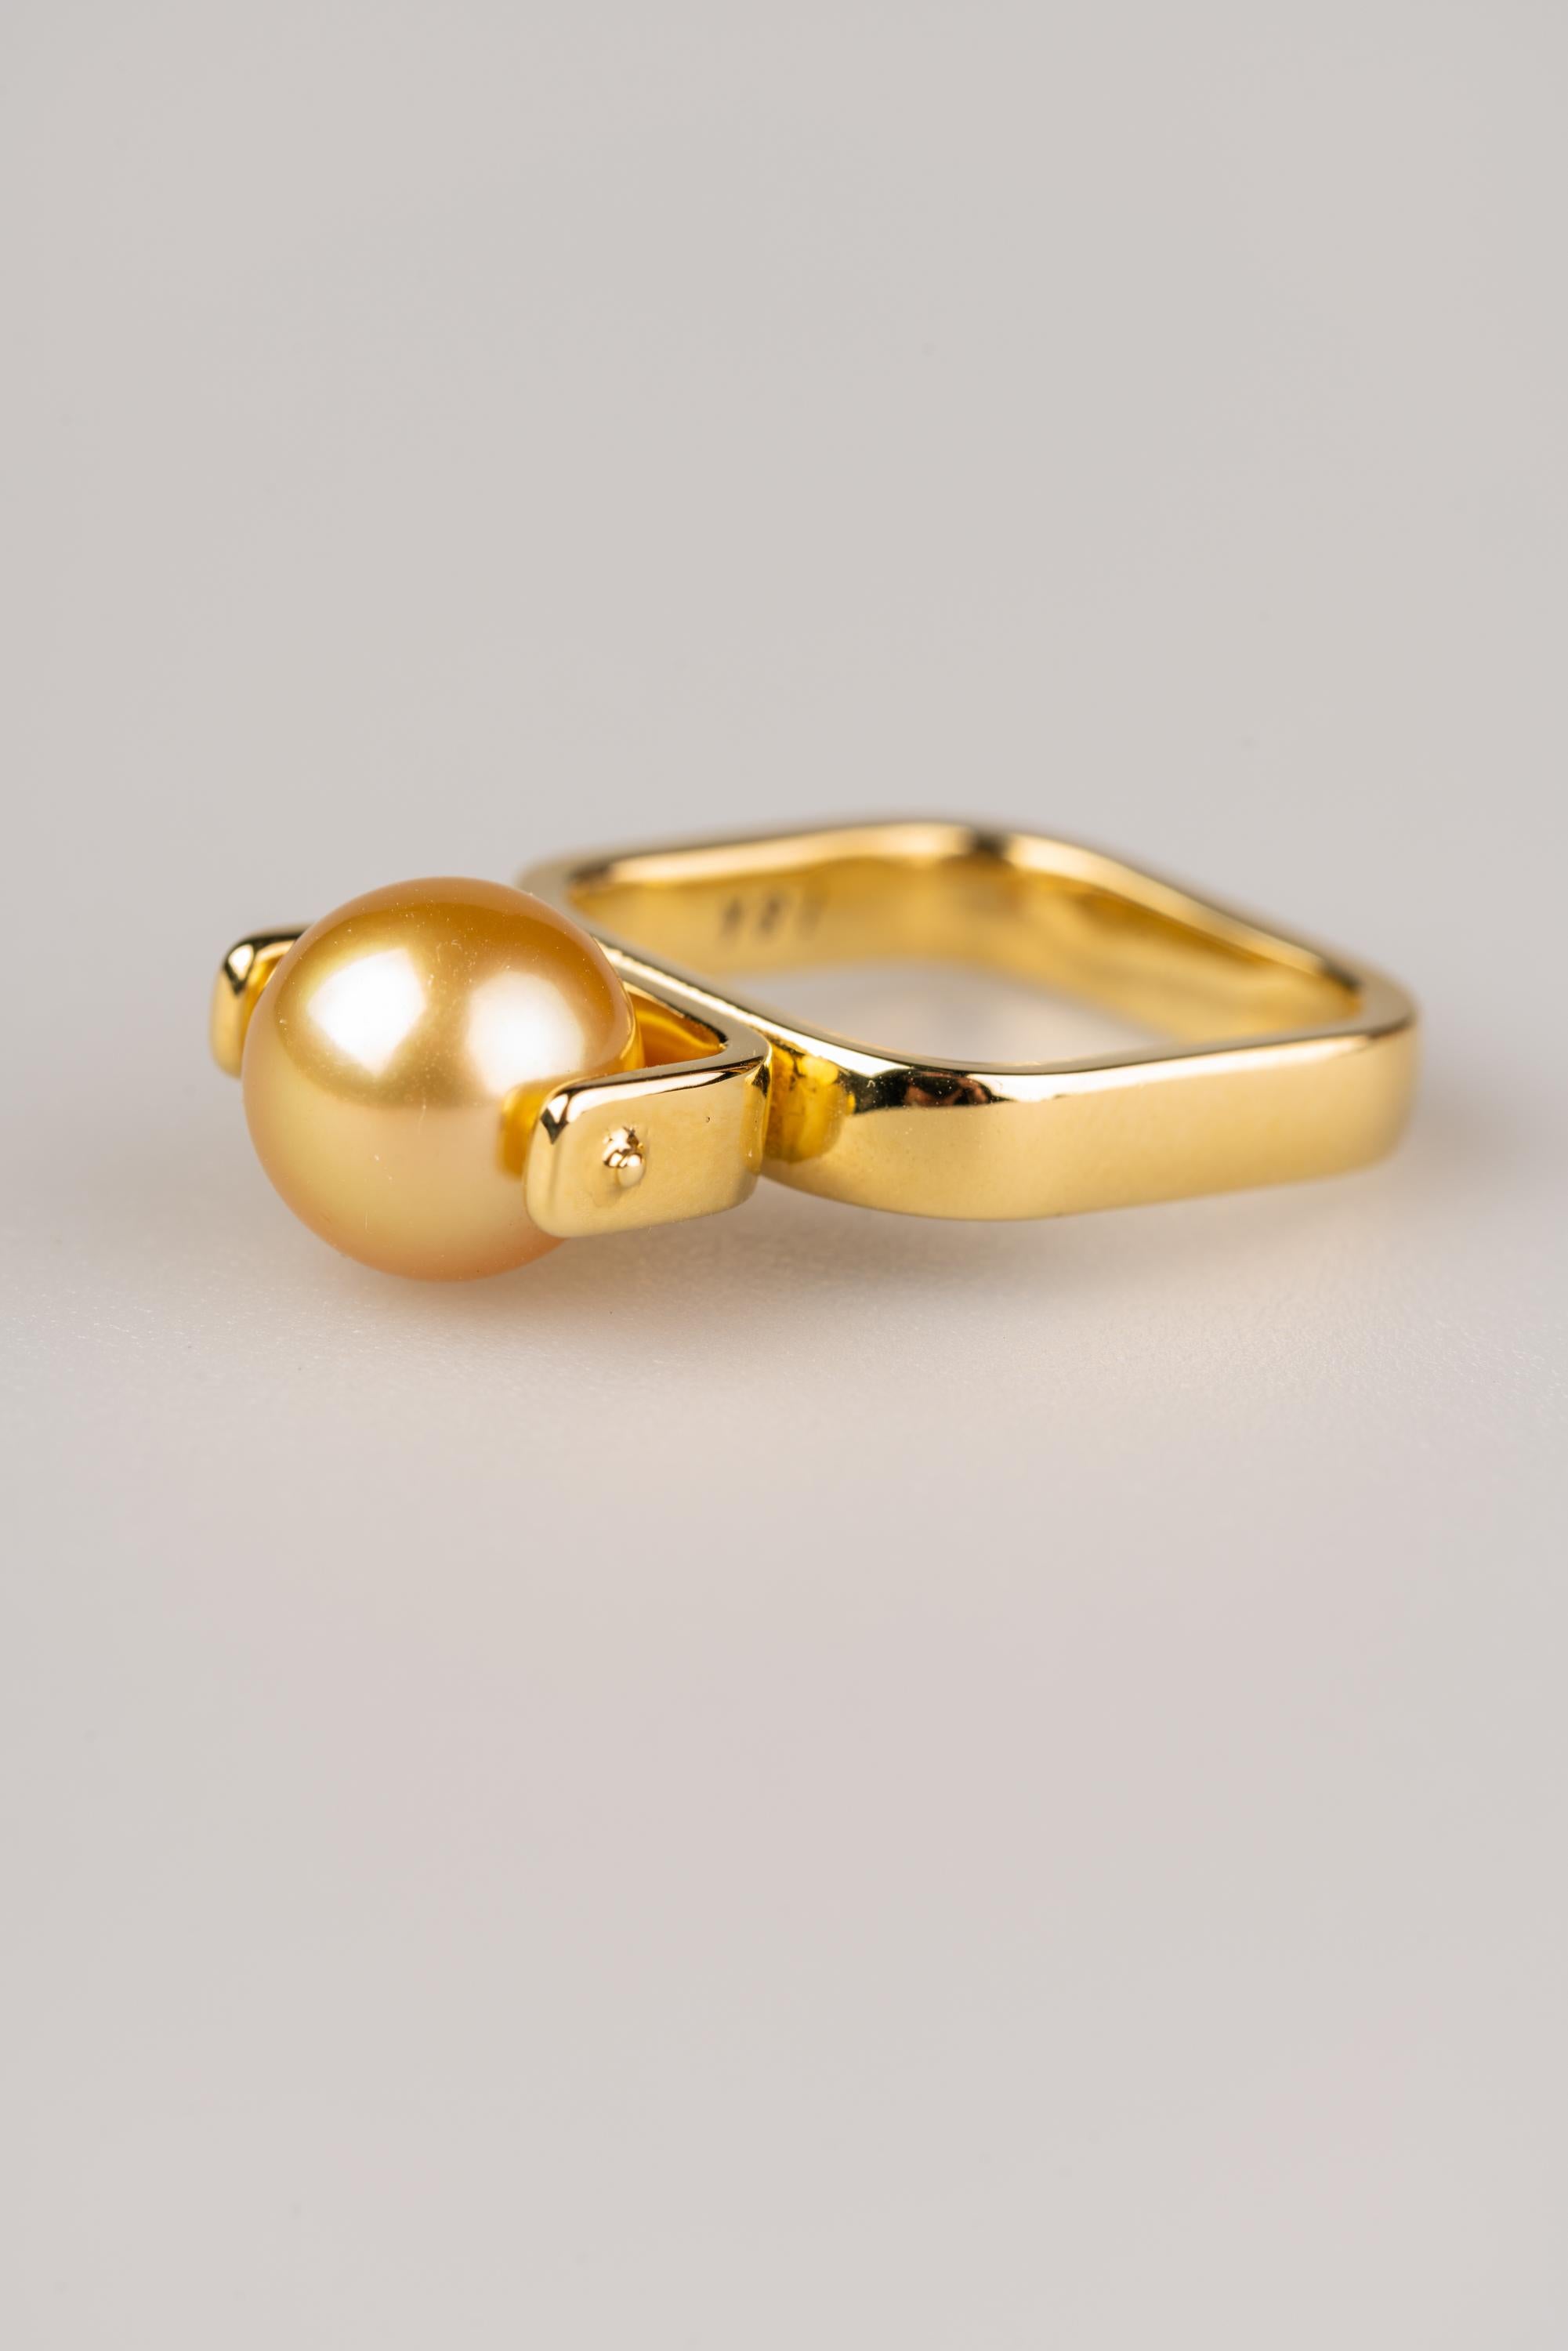 Une bague en or jaune 18k avec une perle dorée des mers du Sud de 9 mm. Bague taille 7. Cette bague a été fabriquée et conçue par llyn strong.